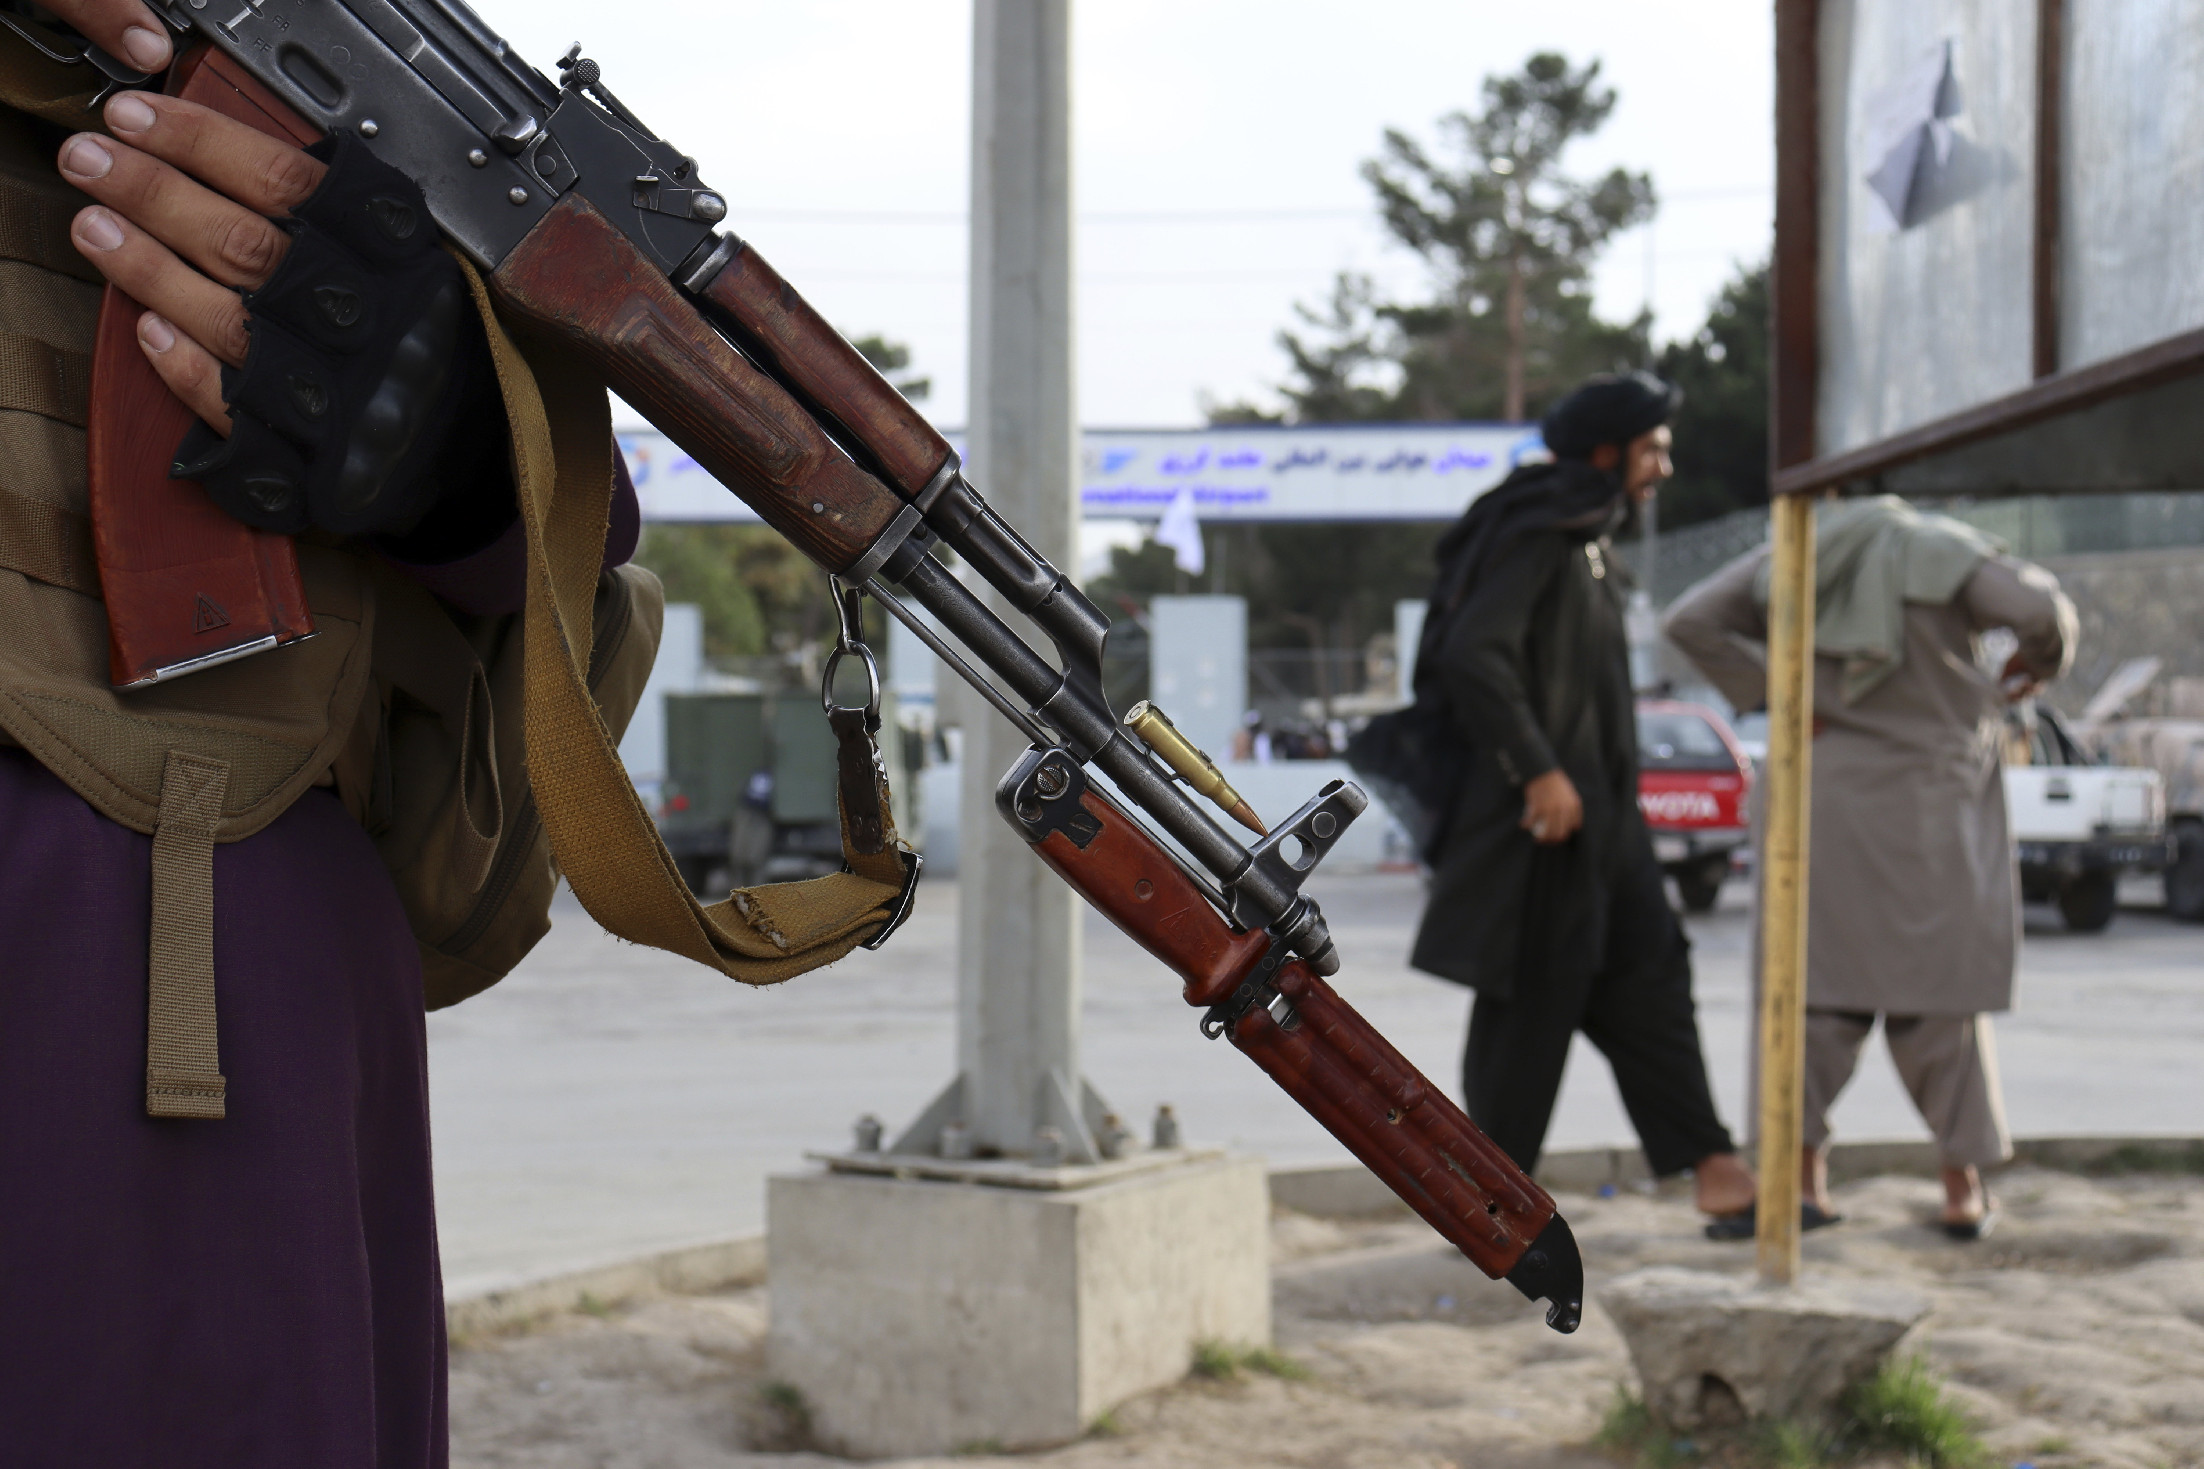 Nem is öltek meg annyi kormánytisztviselőt, mint amennyiről az ENSZ tud, mondják a tálibok